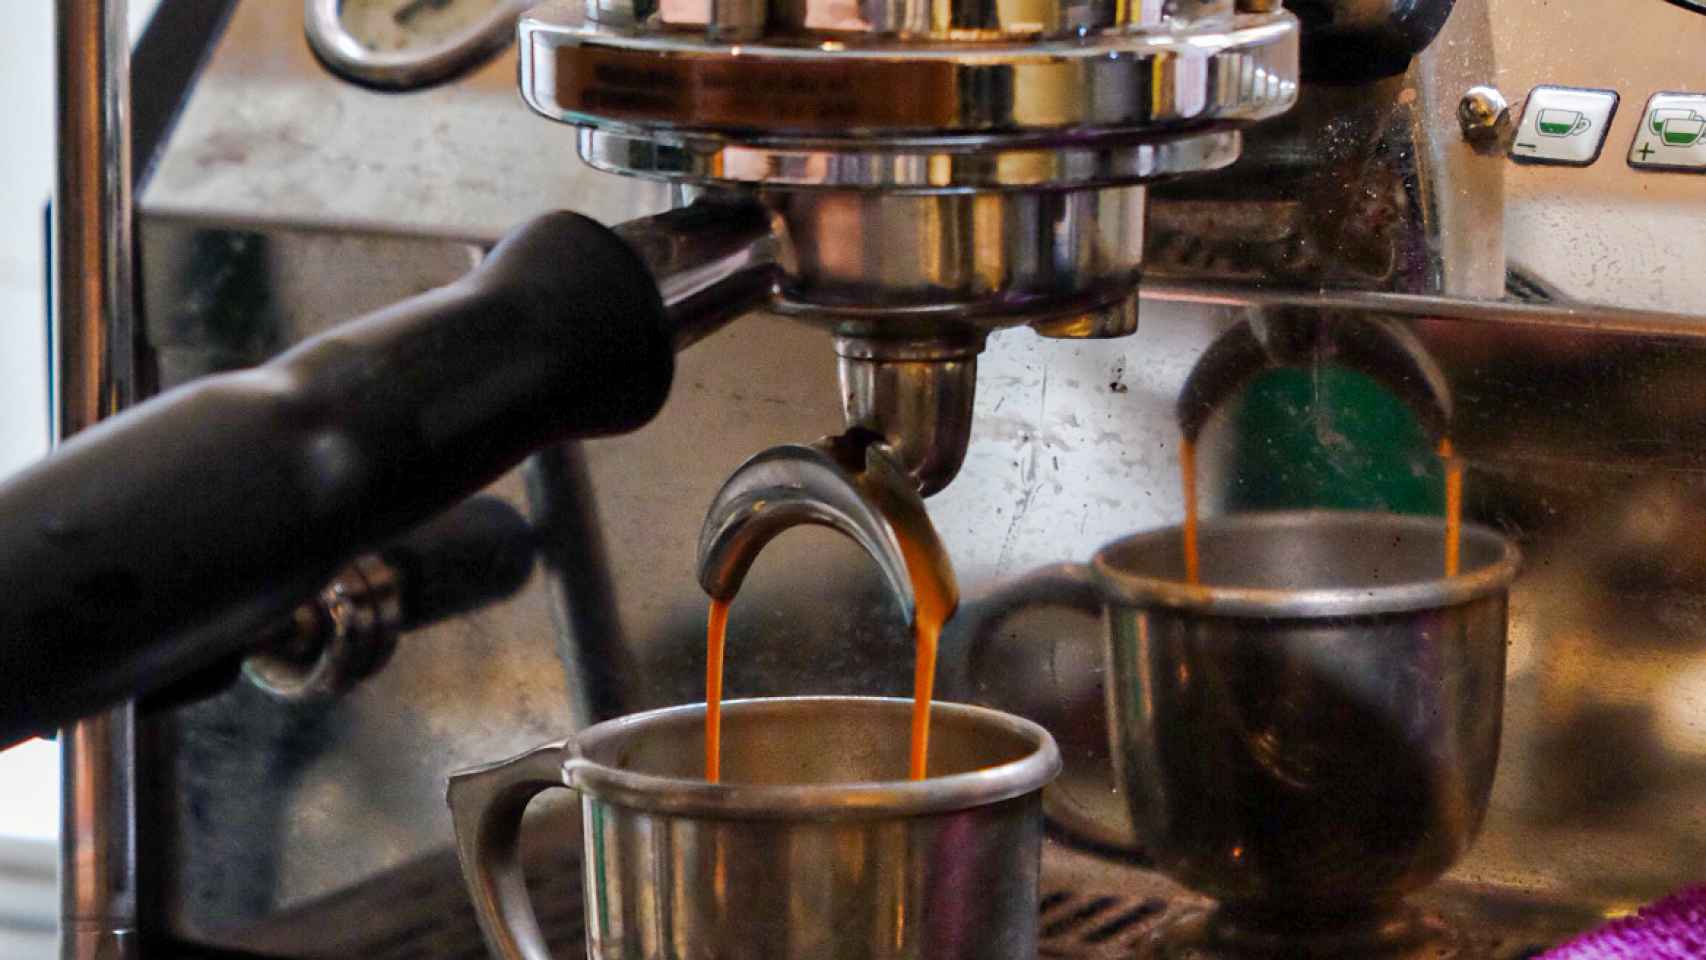 El café de Coffeecard prima la calidad de los establecimientos de proximidad de toda la vida.